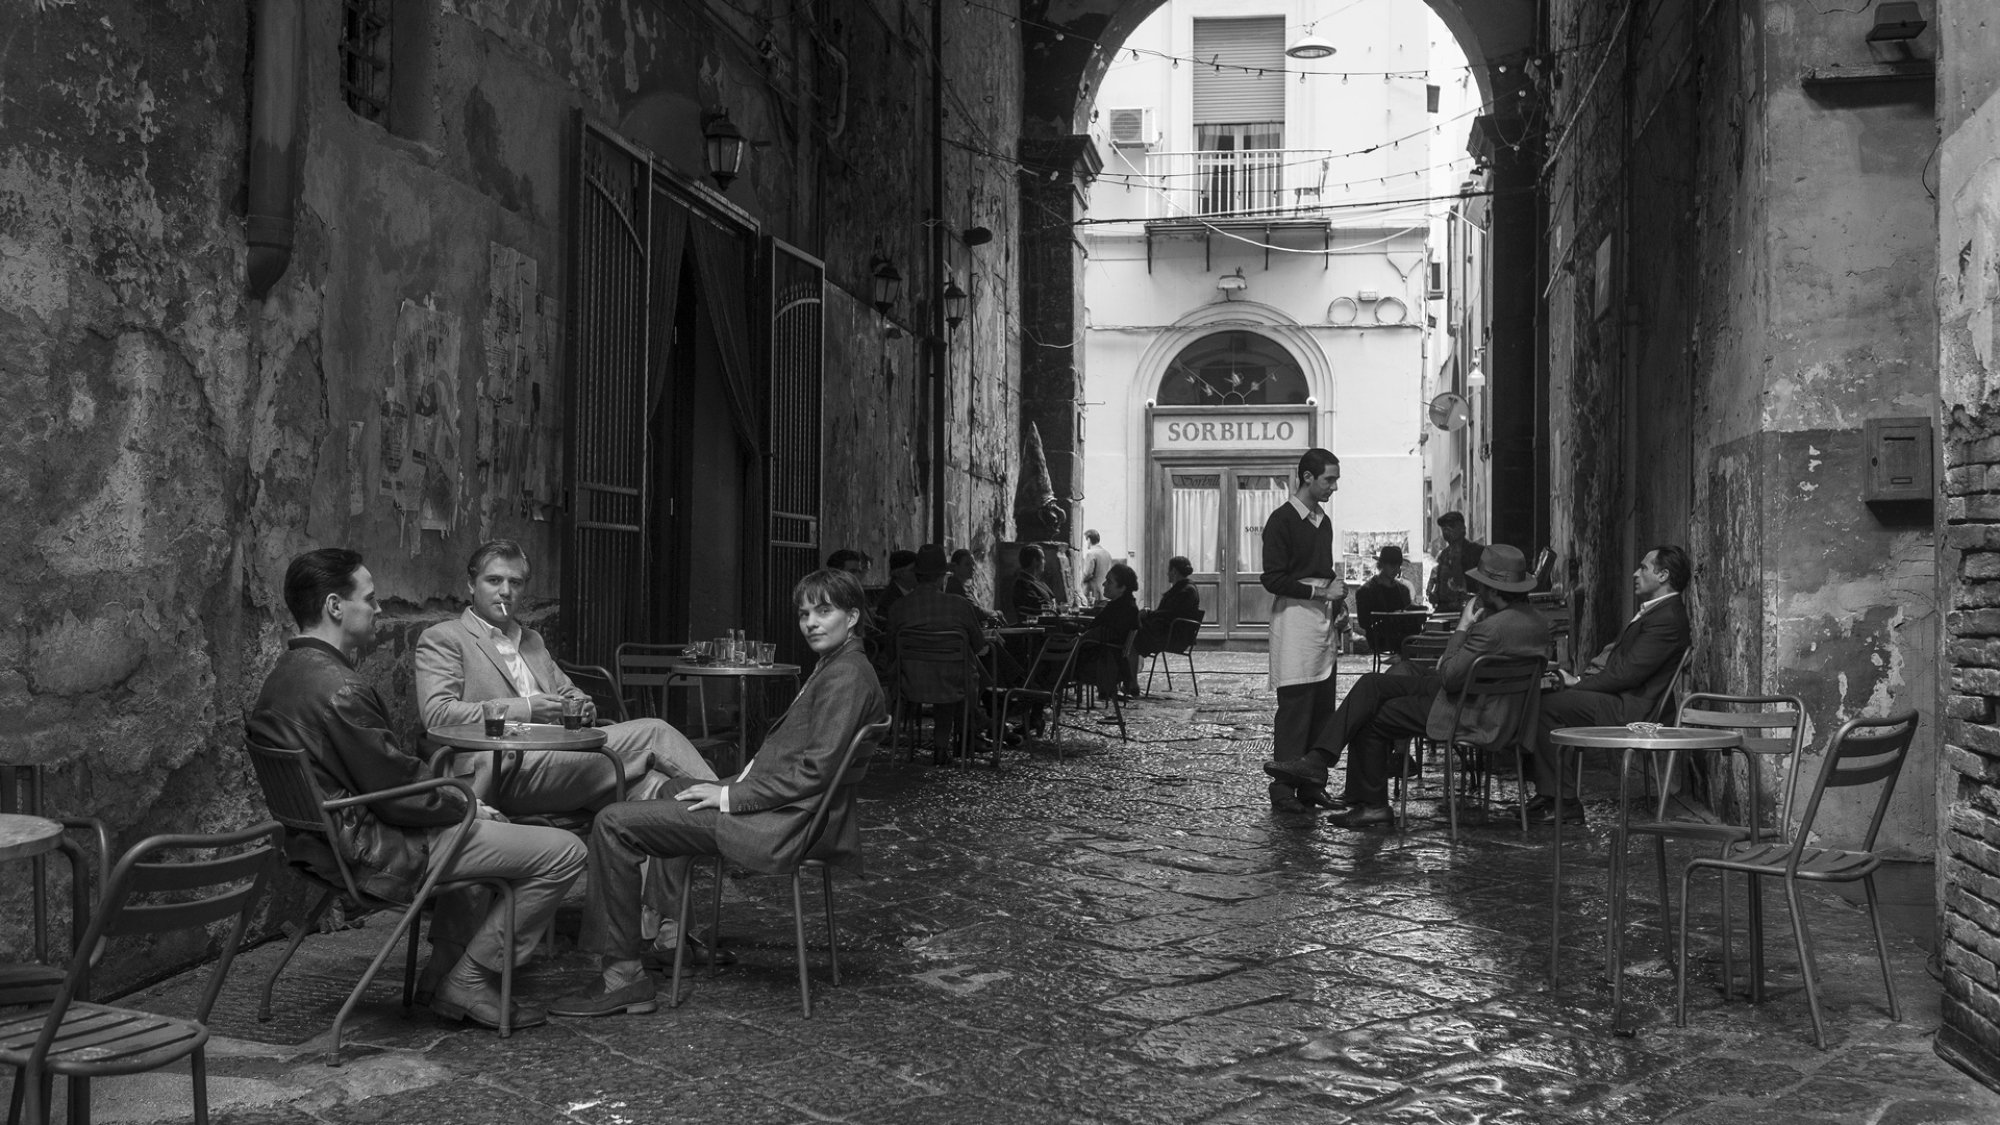 Three people drink coffee in an Italian laneway.